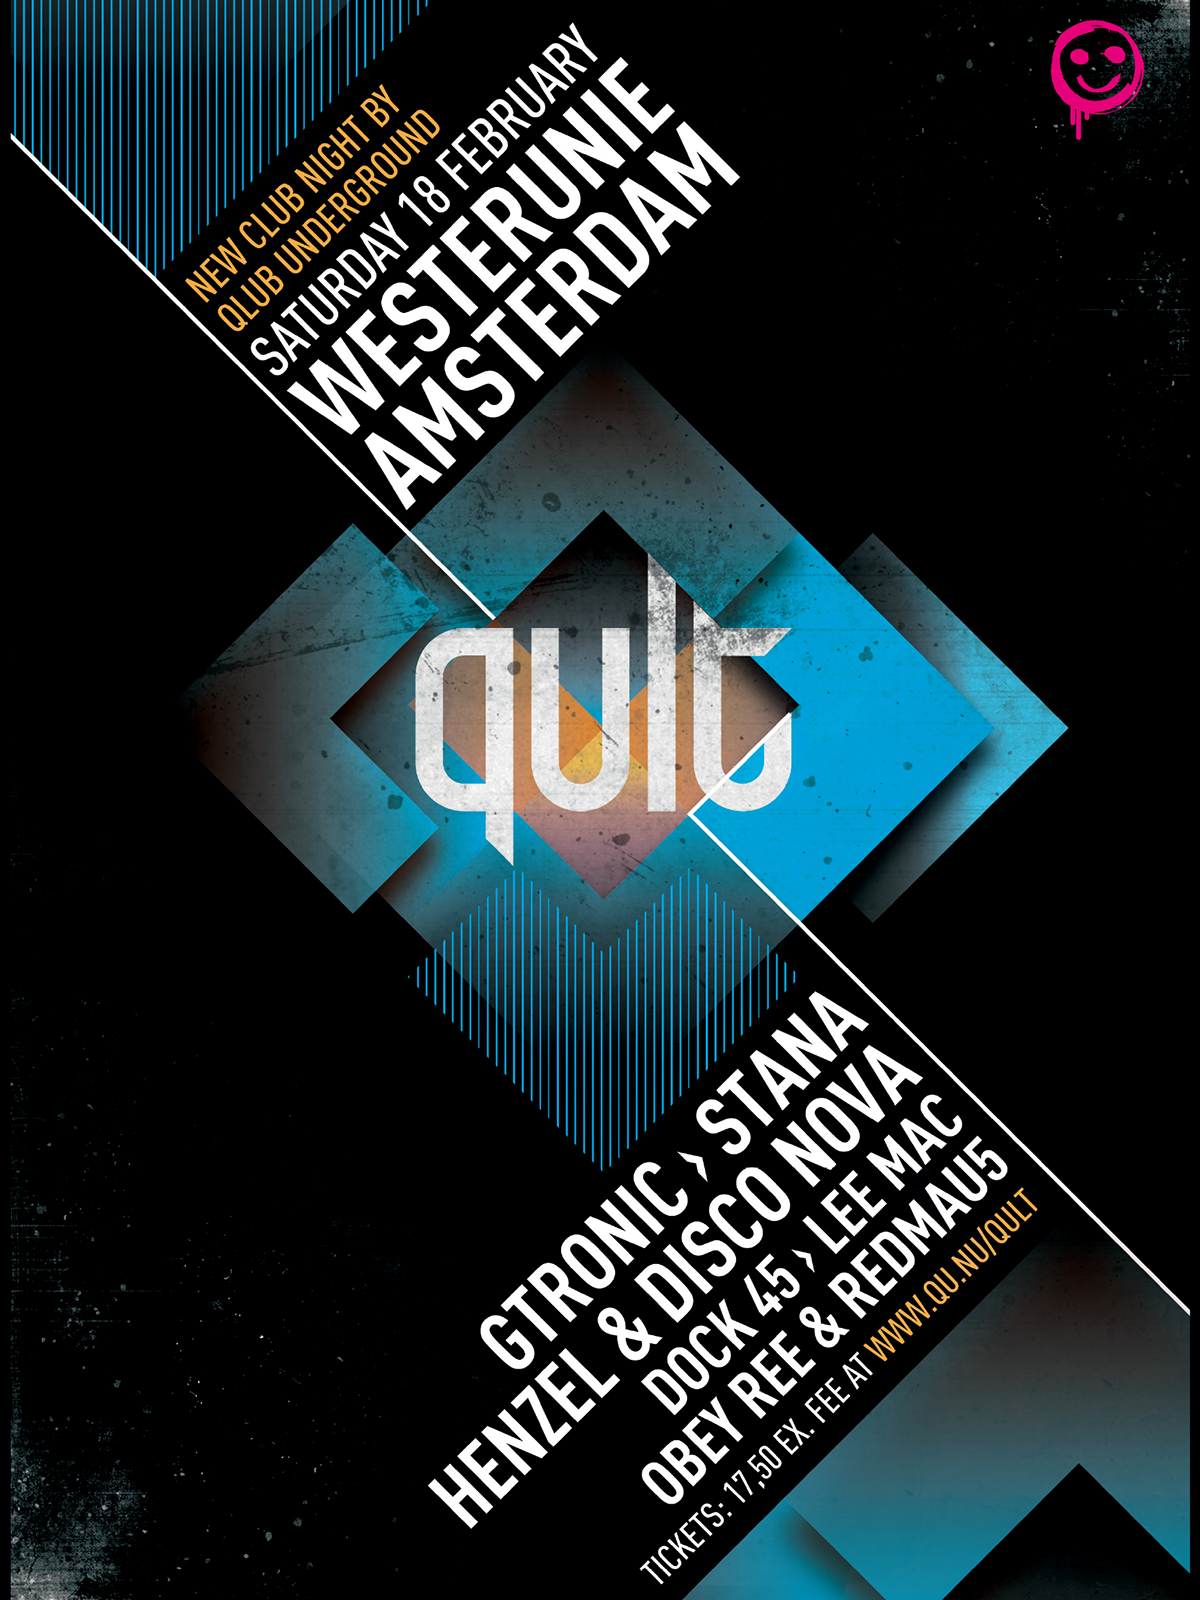 Qult Qlub Underground amsterdam Westerunie q-dance qdance